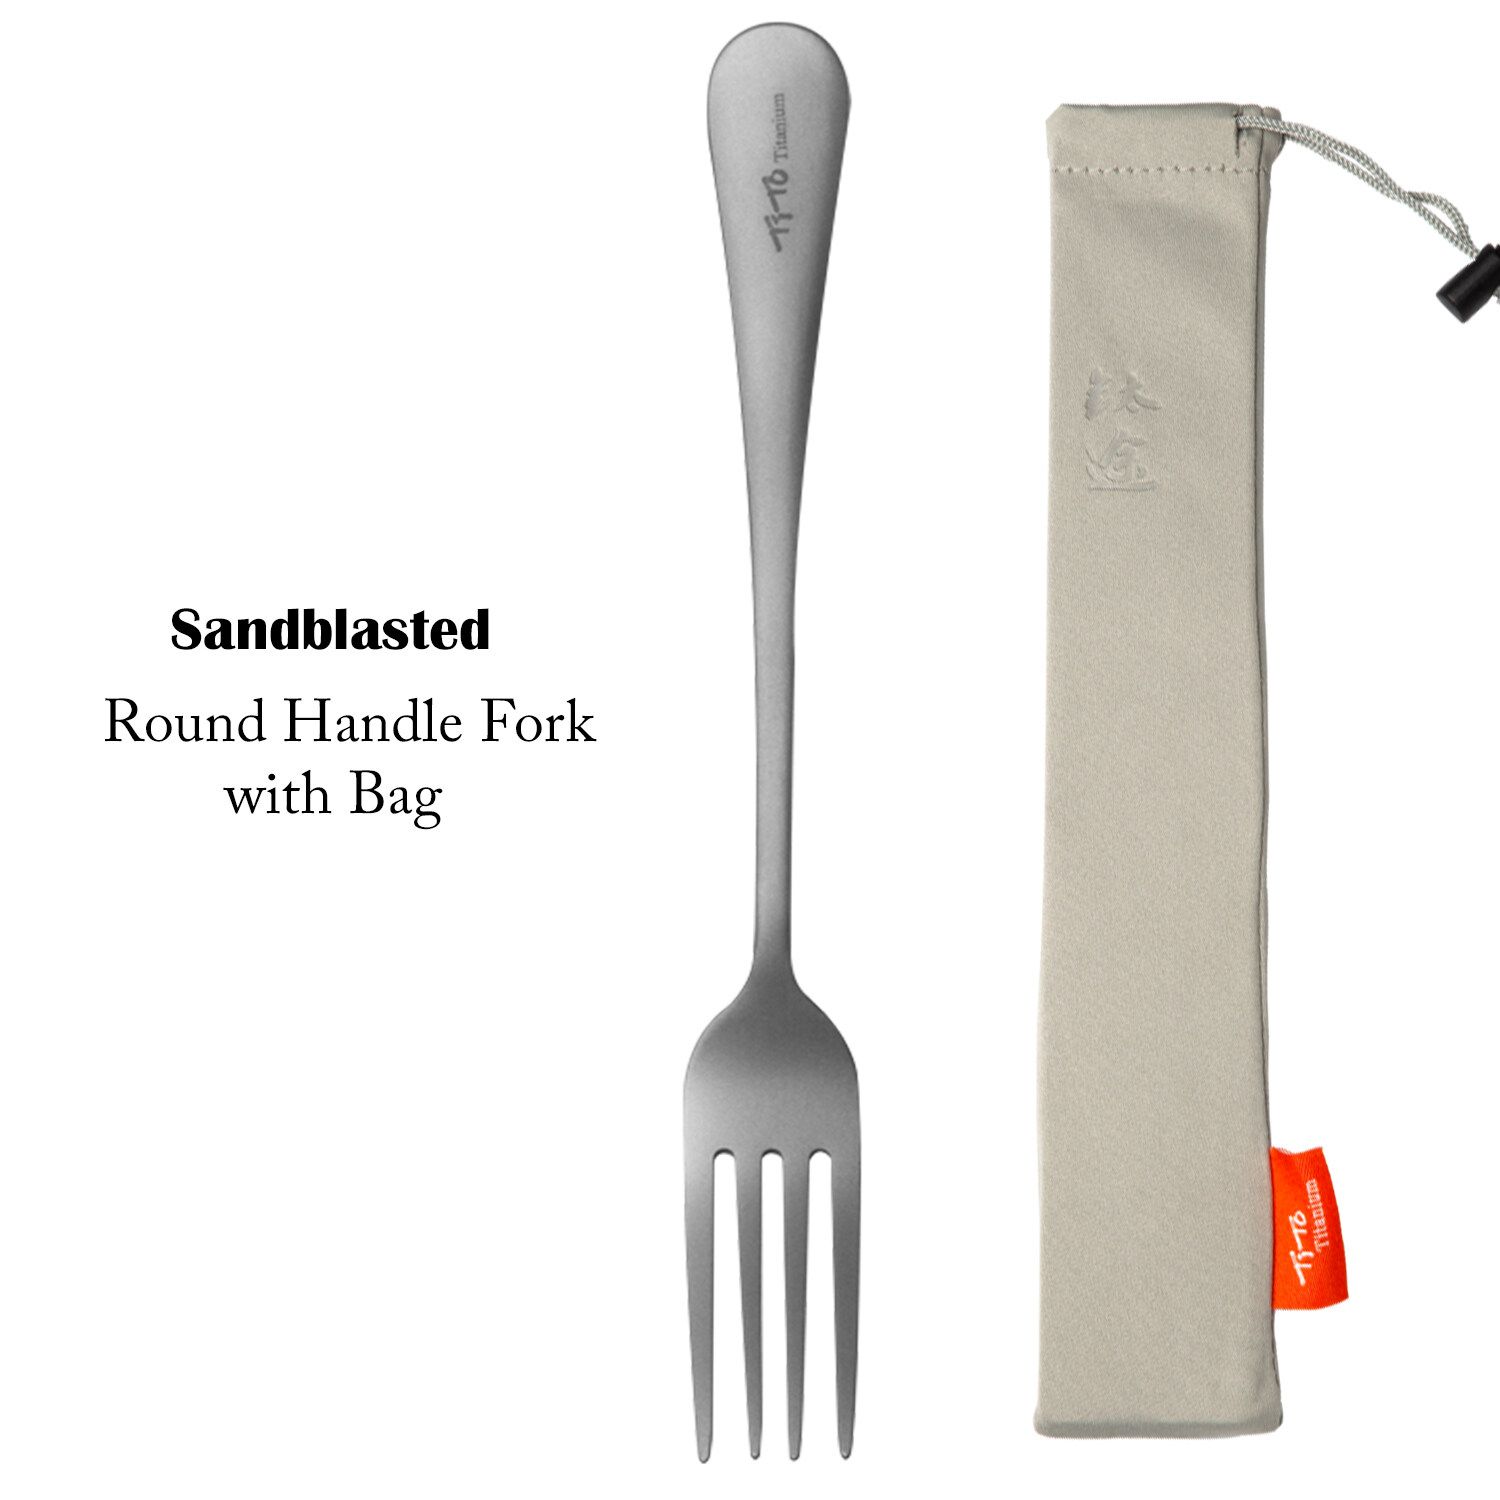 Round shank fork